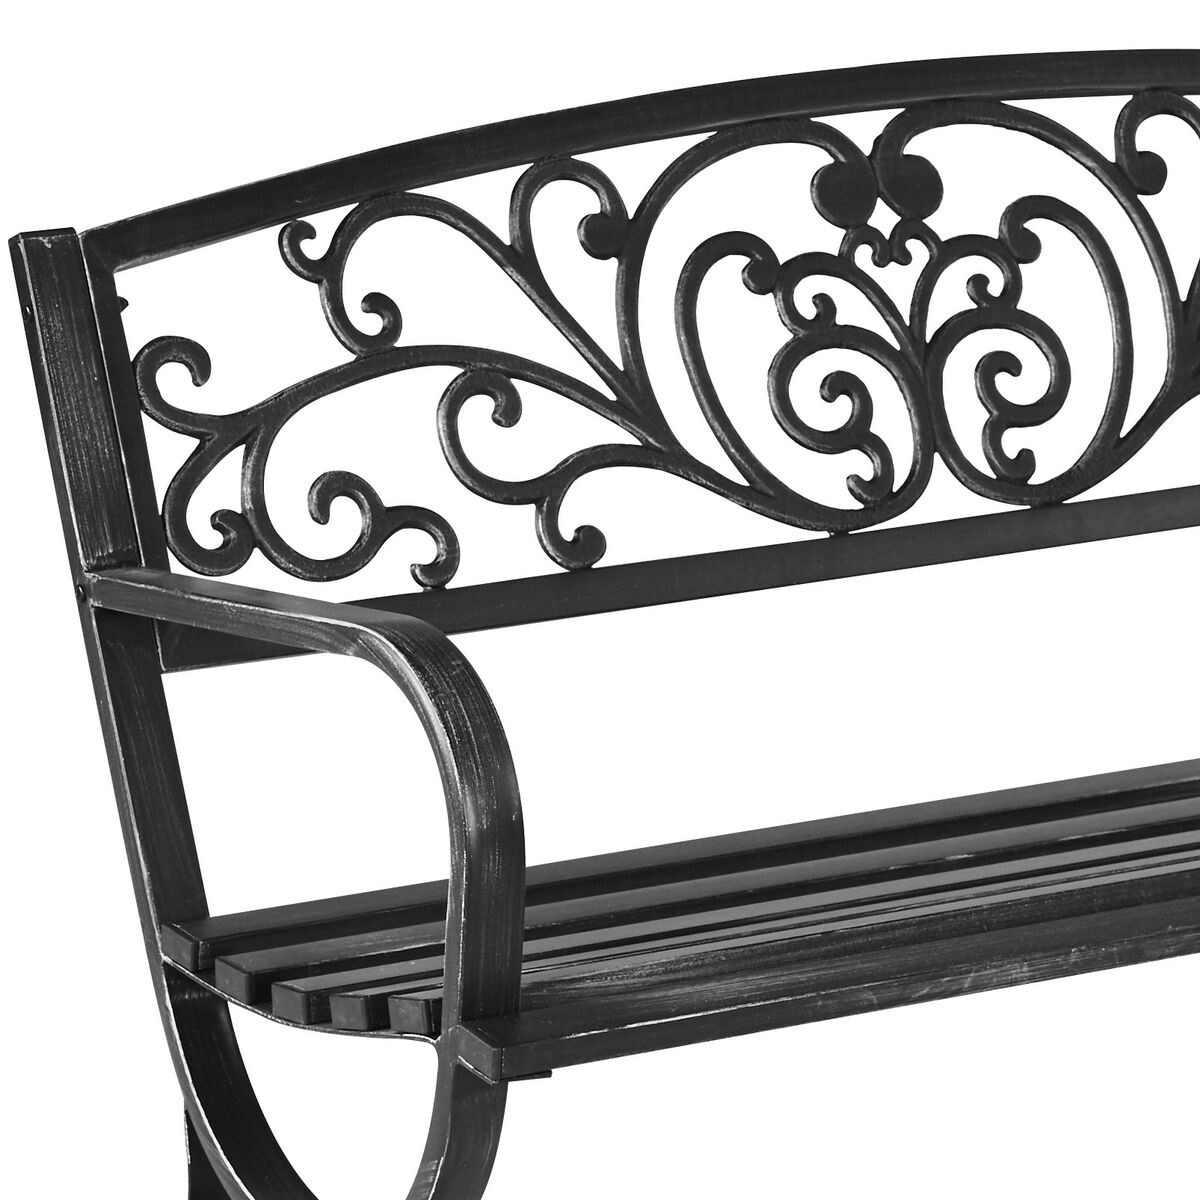 Lawka Ogrodowa Flowers Metalowa Czarna Krzesla Fotele Lawki Ogrodowe W Atrakcyjnej Cenie W Sklepach Leroy Merlin